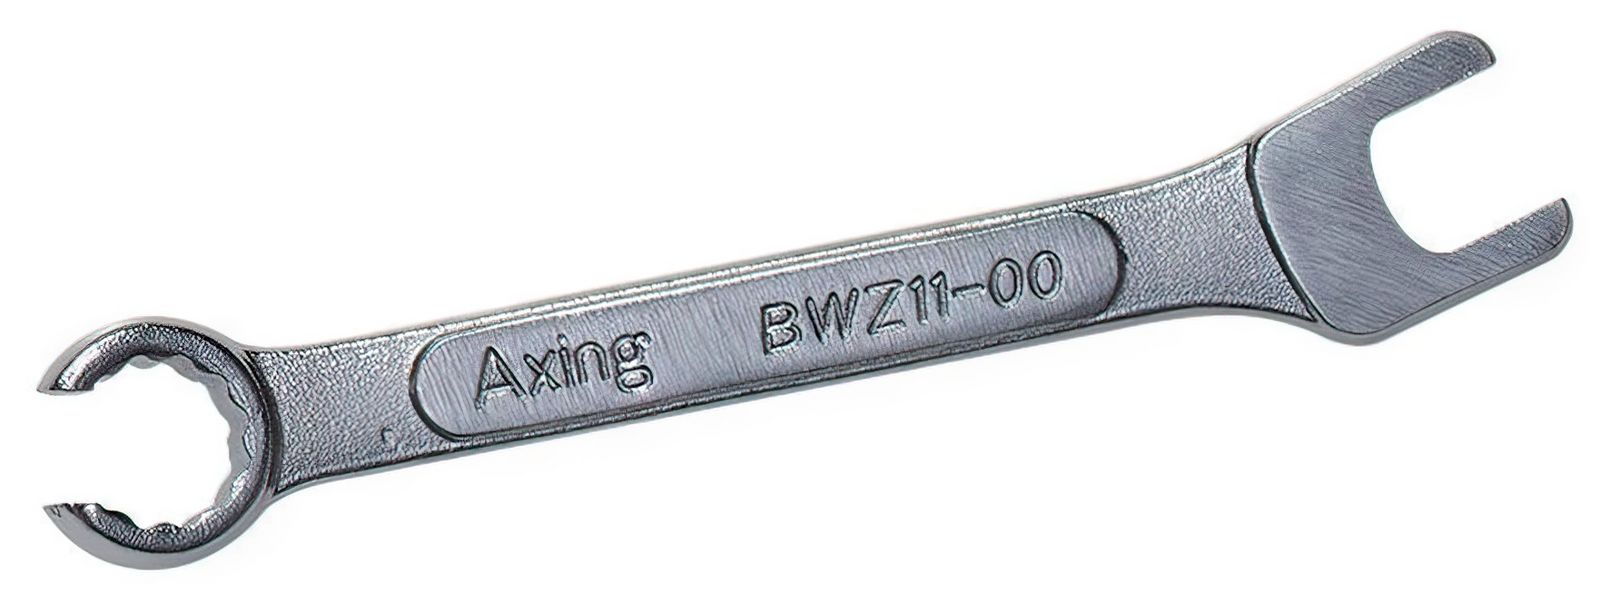 Axing BWZ 11-00 Gabelschlüssel für enge F-Buchsenabstände 11 mm-/bilder/big/axing-bwz11-00.jpg